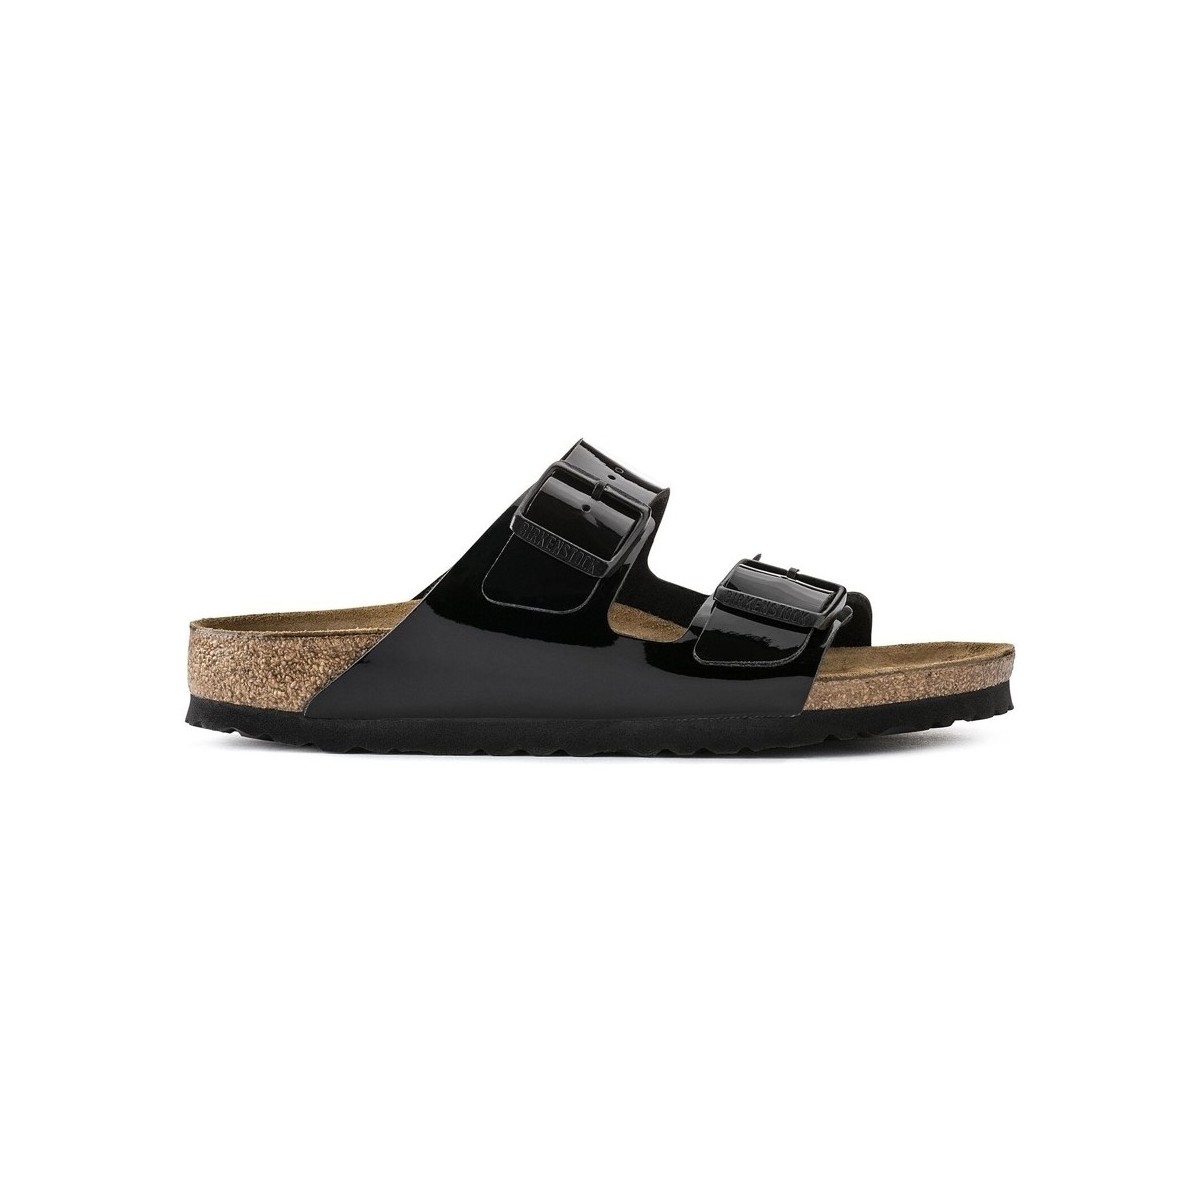 Schoenen Dames Sandalen / Open schoenen Birkenstock Arizona 1005292 Narrow - Black Patent Zwart